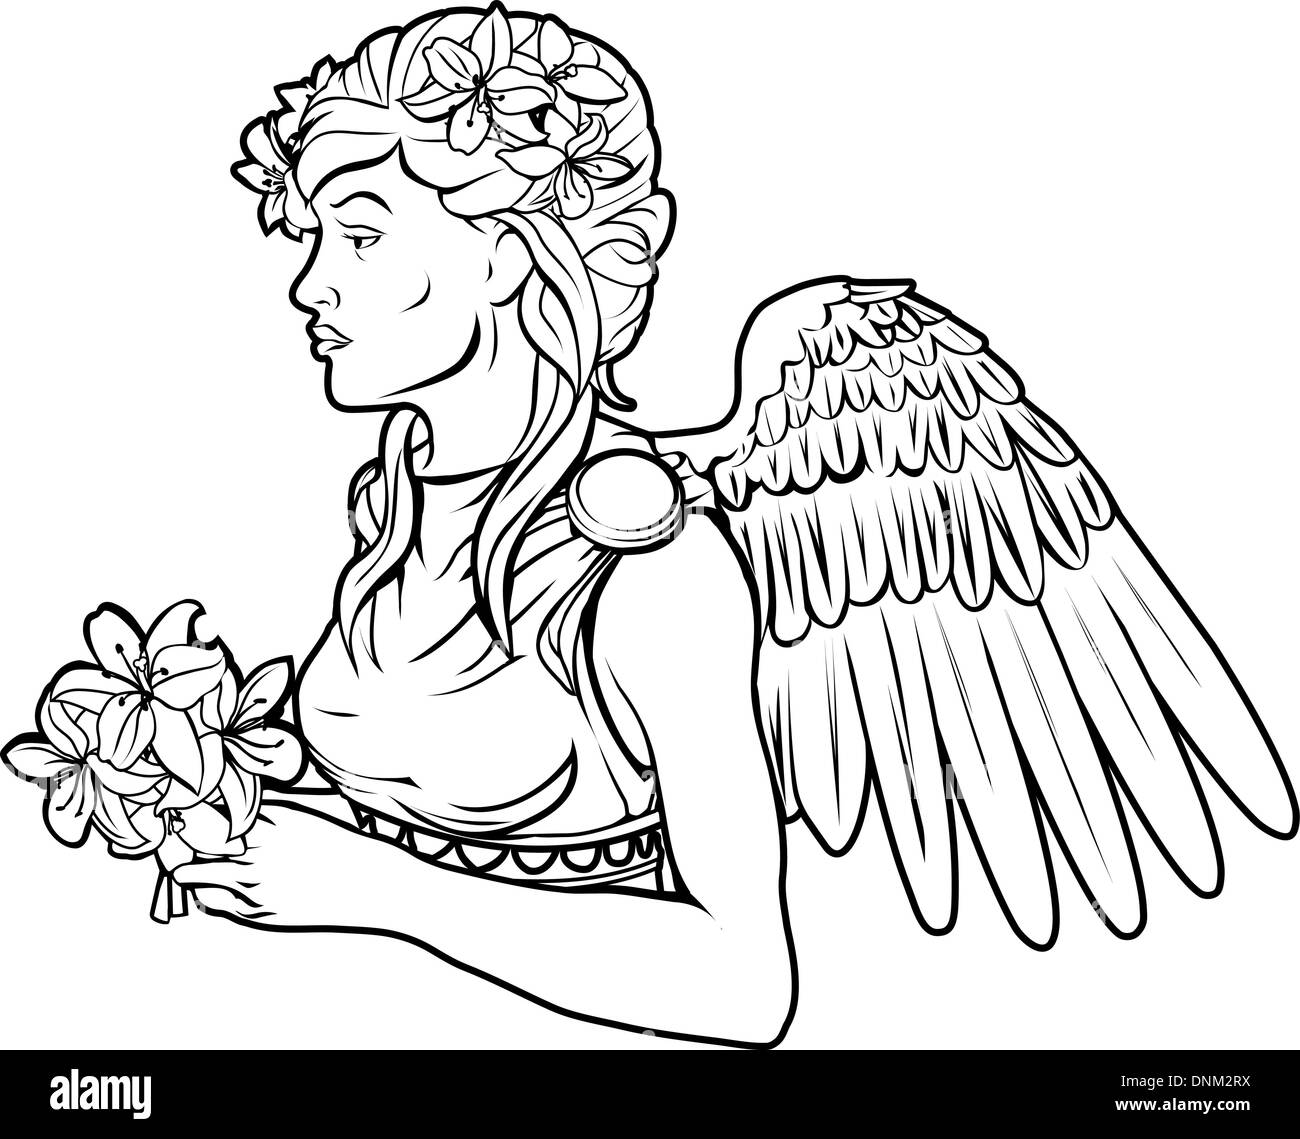 Une illustration d'un ange noir stylisé femme tatouage peut-être un ange Illustration de Vecteur